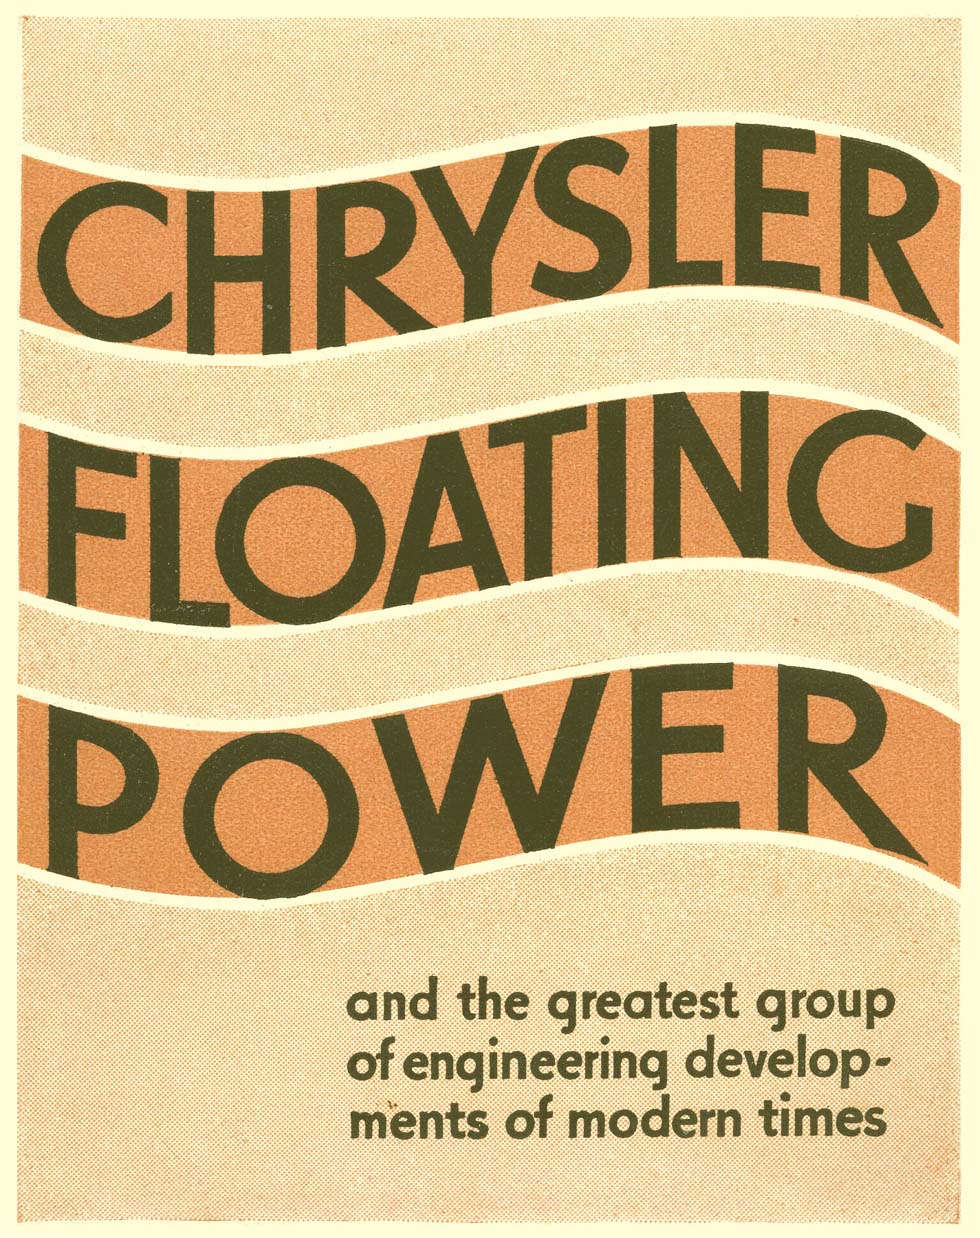 1932 Chrysler Floating Power-00